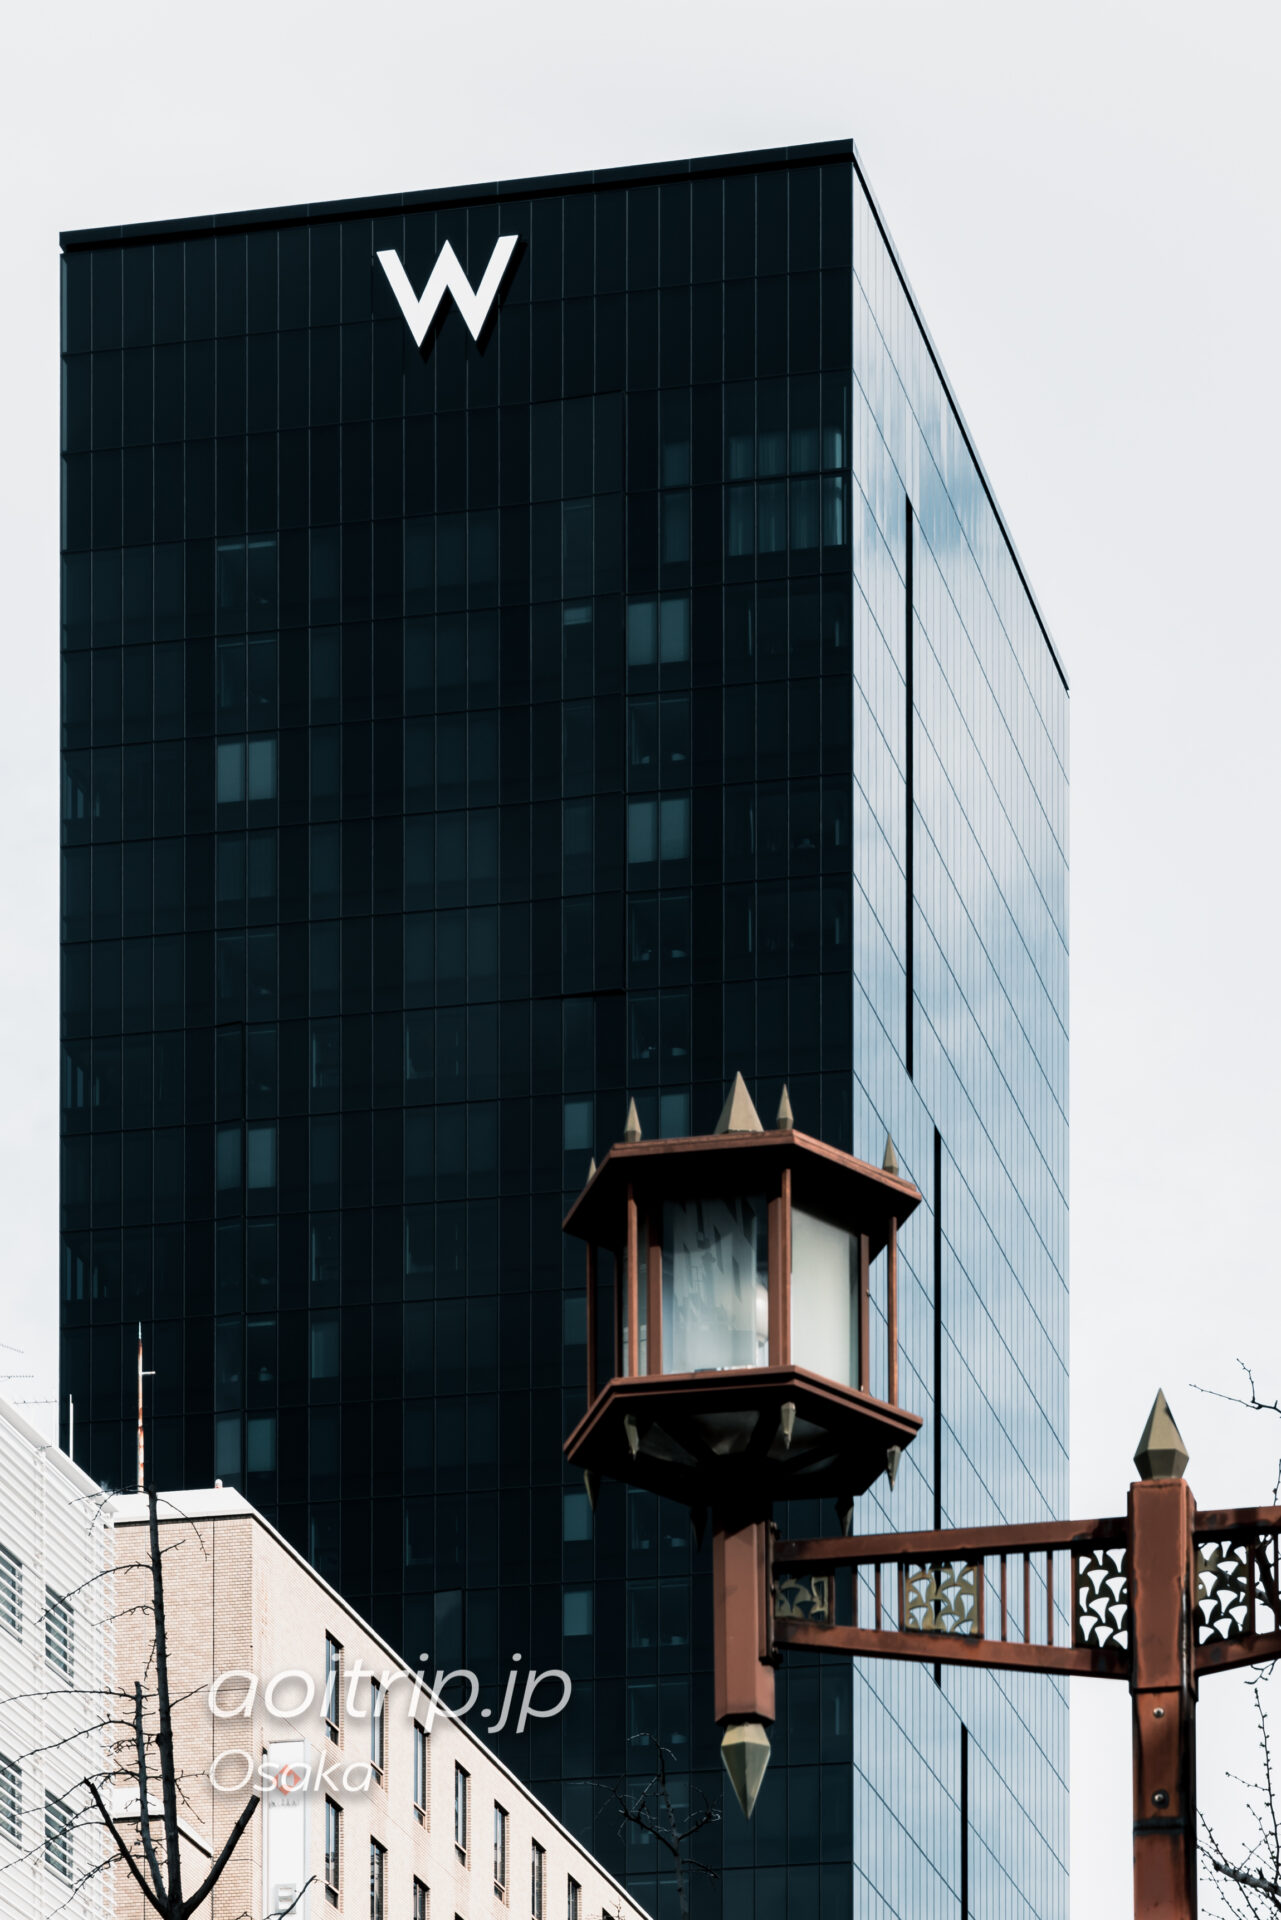 御堂筋の街路灯とWホテル大阪の外観